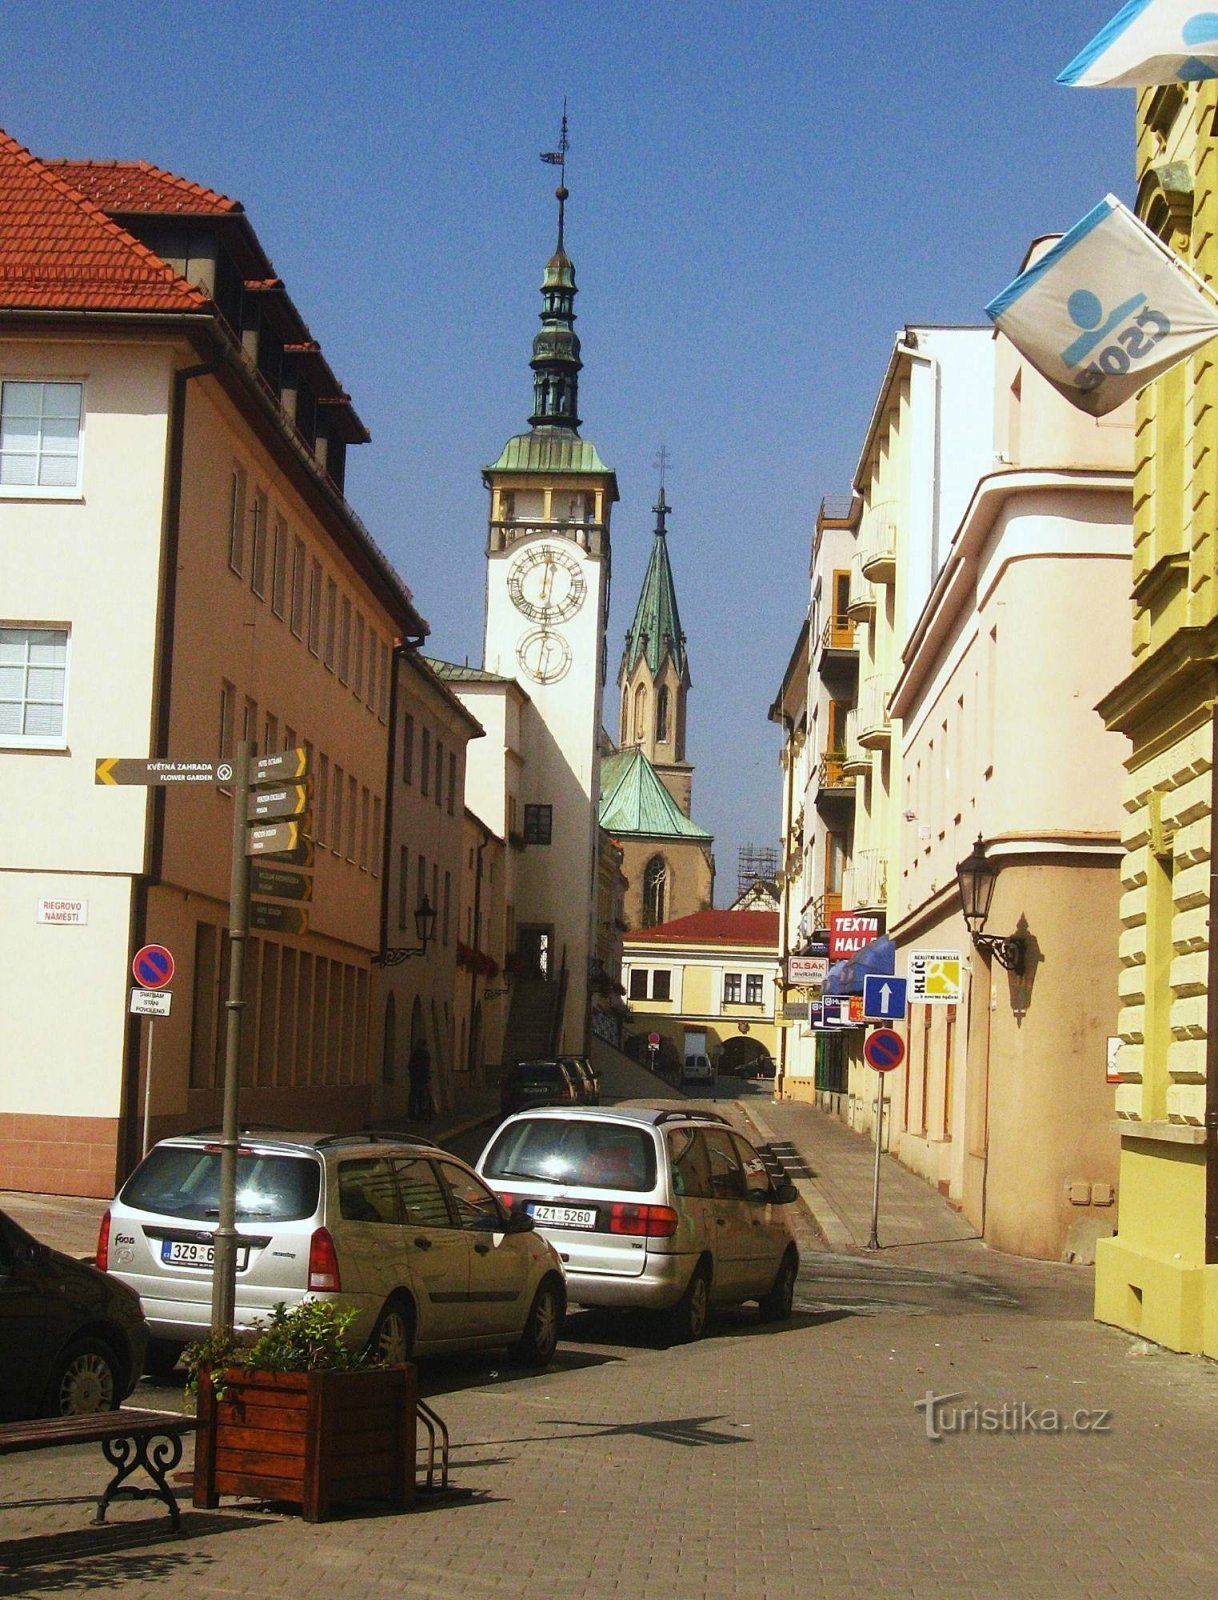 Kroměříž rådhus